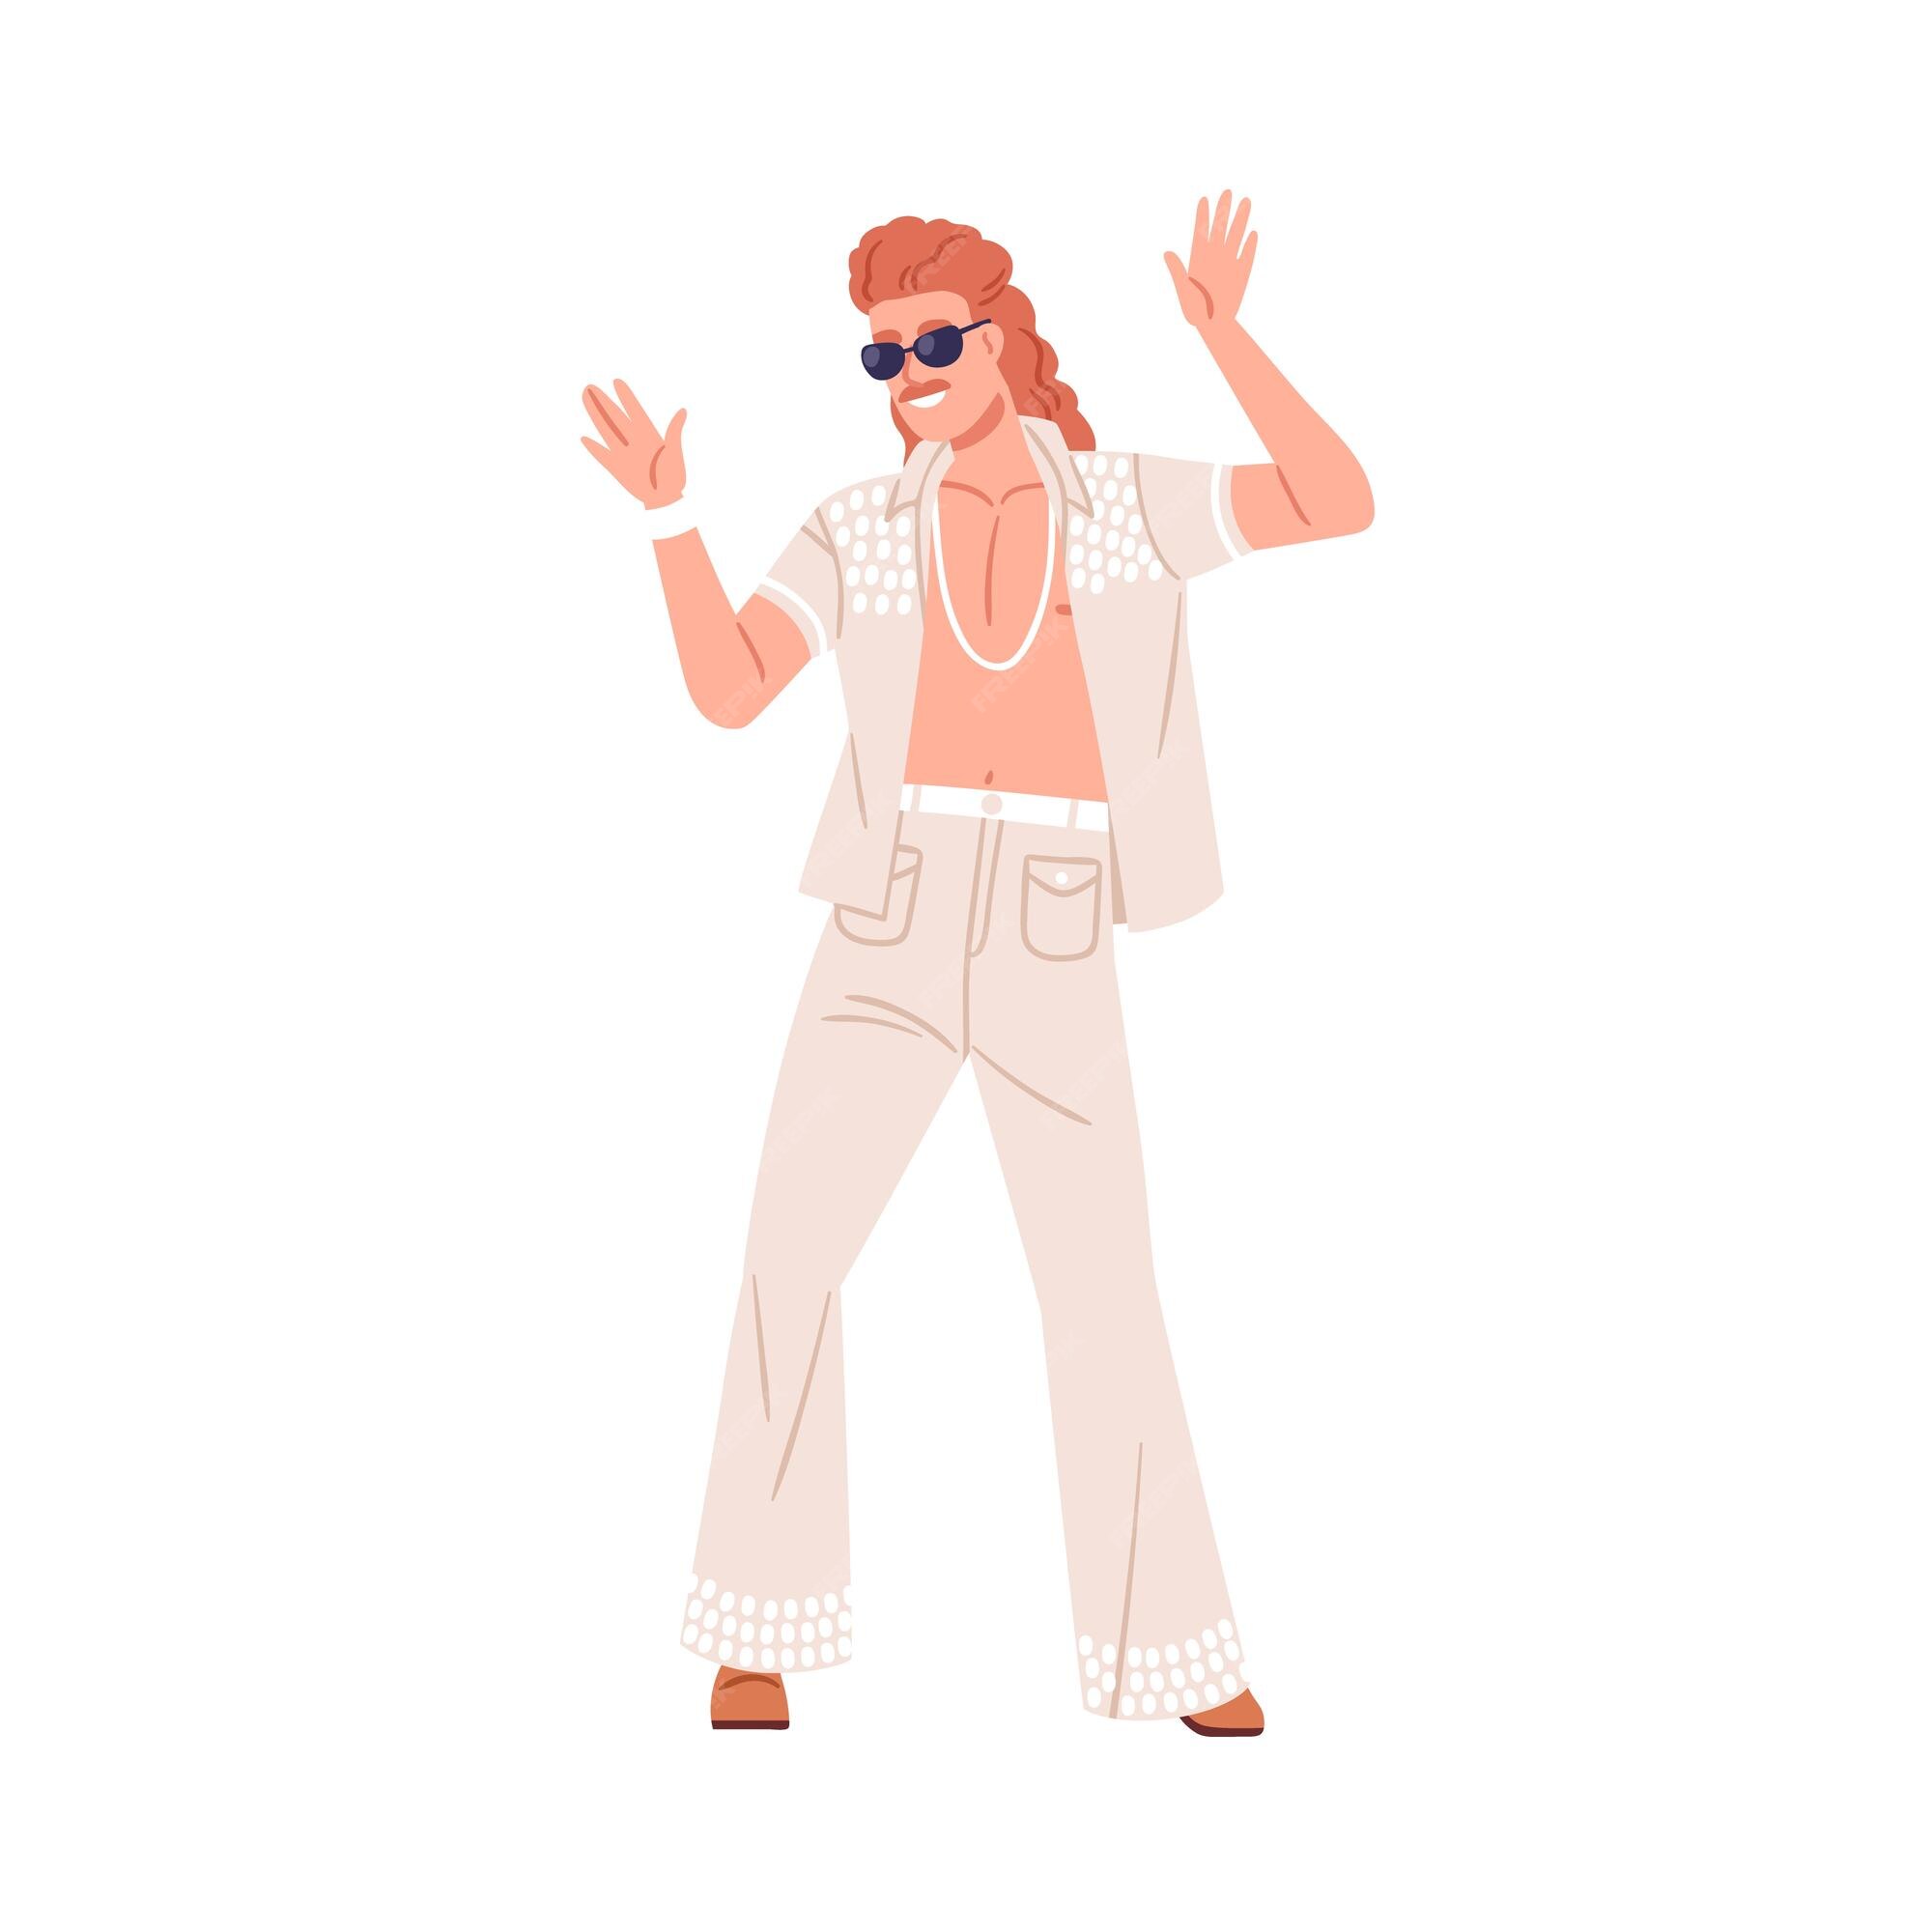 Hombre gafas de sol bailando con ropa de moda de los 80 música de los 80 en fiesta retro. persona con ropa, ropa, peinado al estilo de los